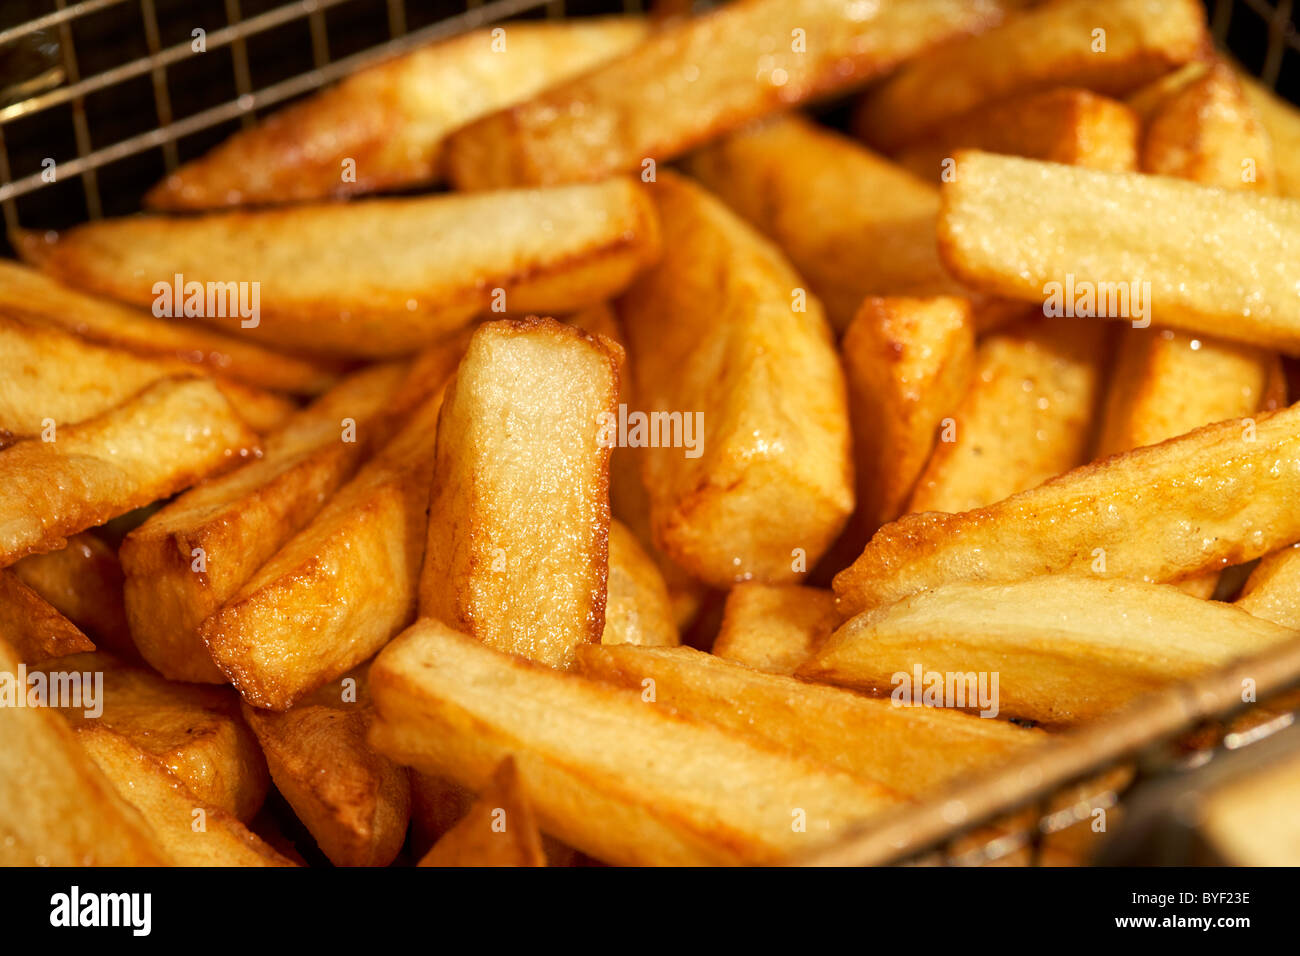 Golden Brown fait maison fraîchement préparé à base de copeaux de pommes de terre dans un panier de friteuse profonde Banque D'Images